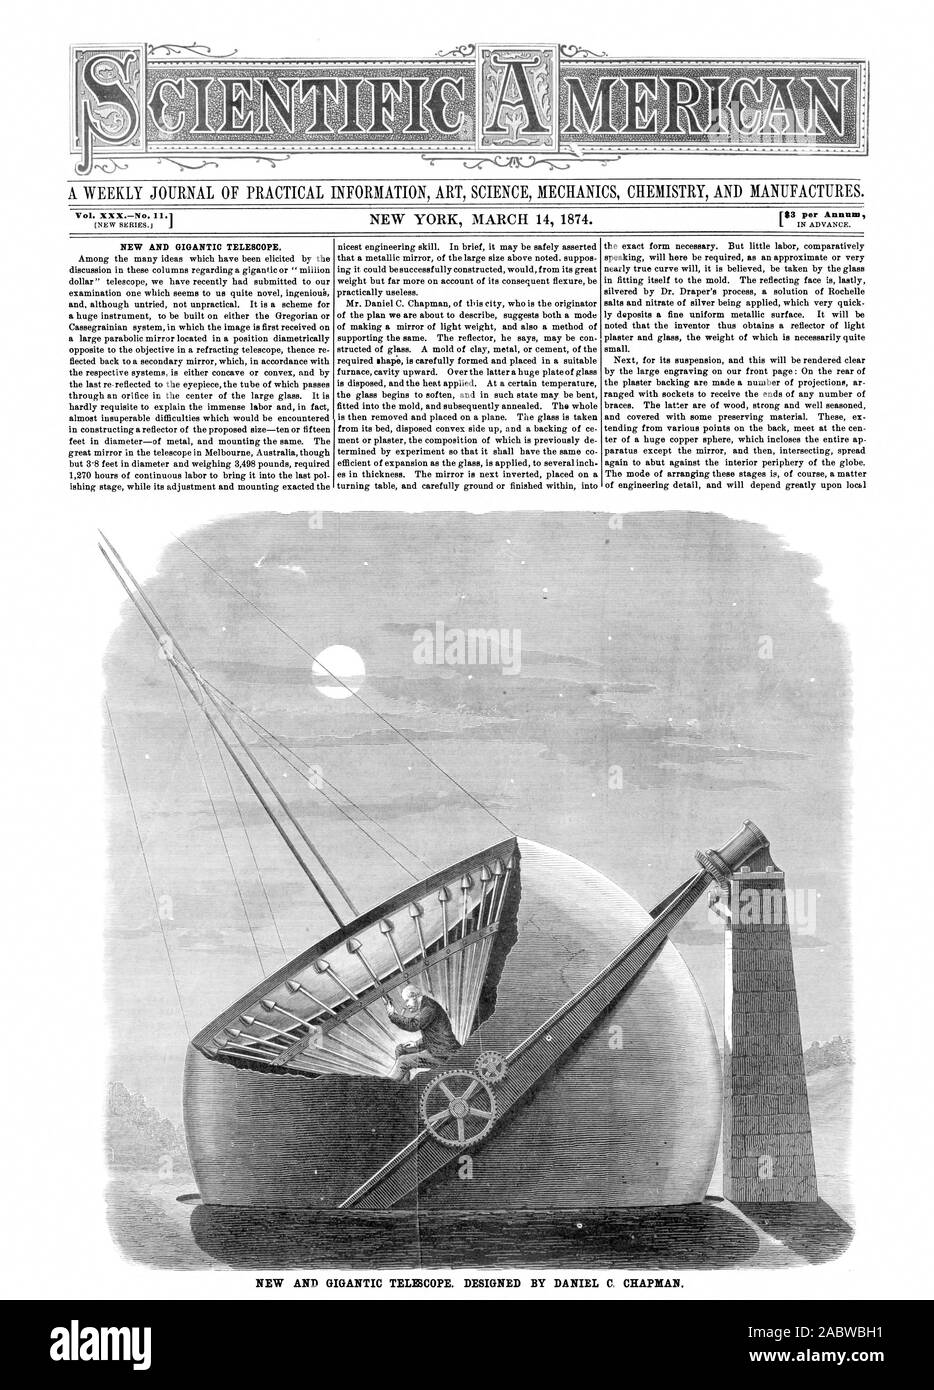 Vol. XXXNo. .1 183 per Annum NEW AND GIGANTIC TELE3COPE. DESIGNED BY DANIEL C. CHAPMAN., scientific american, 74-03-14 Stock Photo